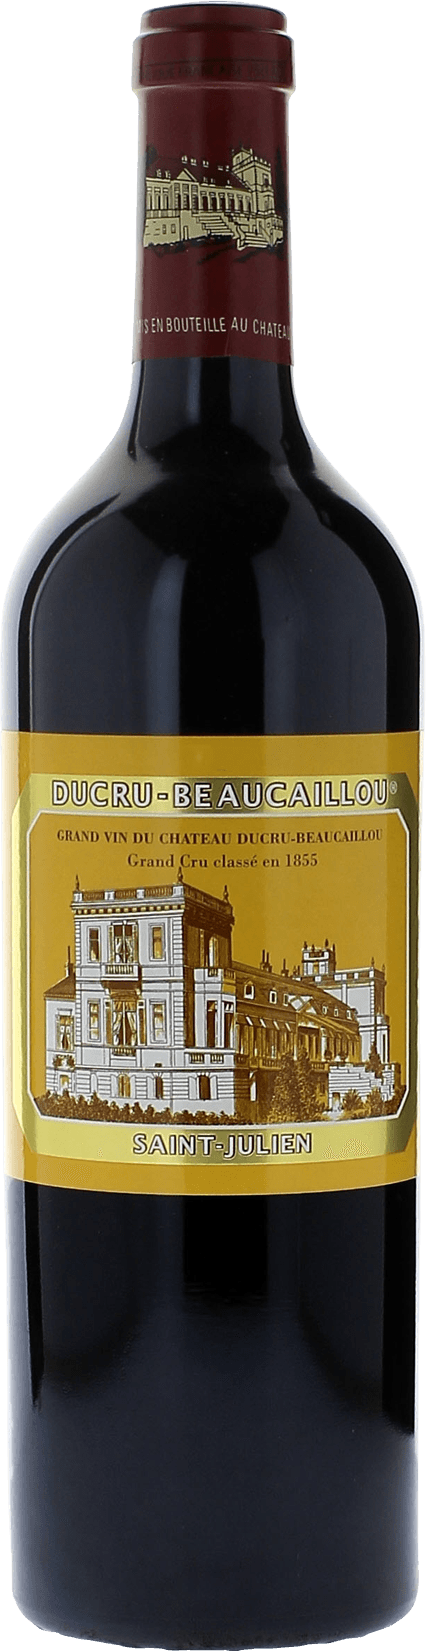 Ducru beaucaillou 1983 2me Grand cru class Saint-Julien, Bordeaux rouge